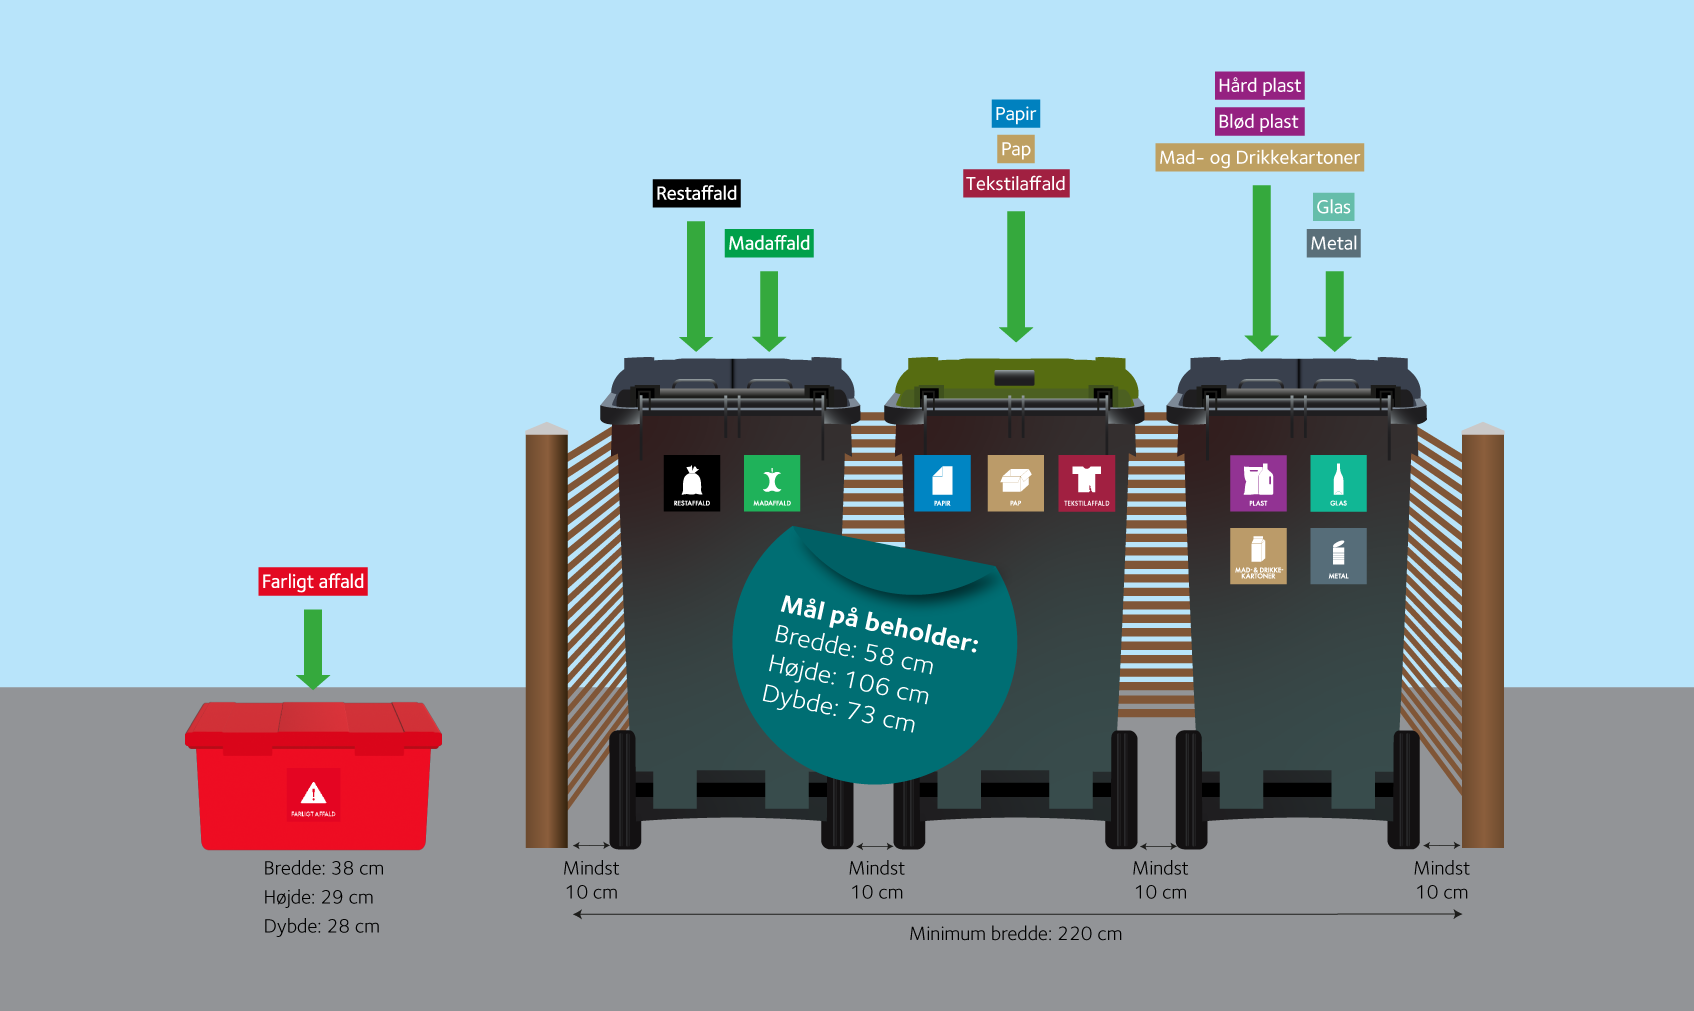 Grafisk illustration af tre affaldsbeholdere i et skjul plus en rød kasse til farligt affald. Derudover er der angivet mål på de forskellige beholdere samt krav til plads.